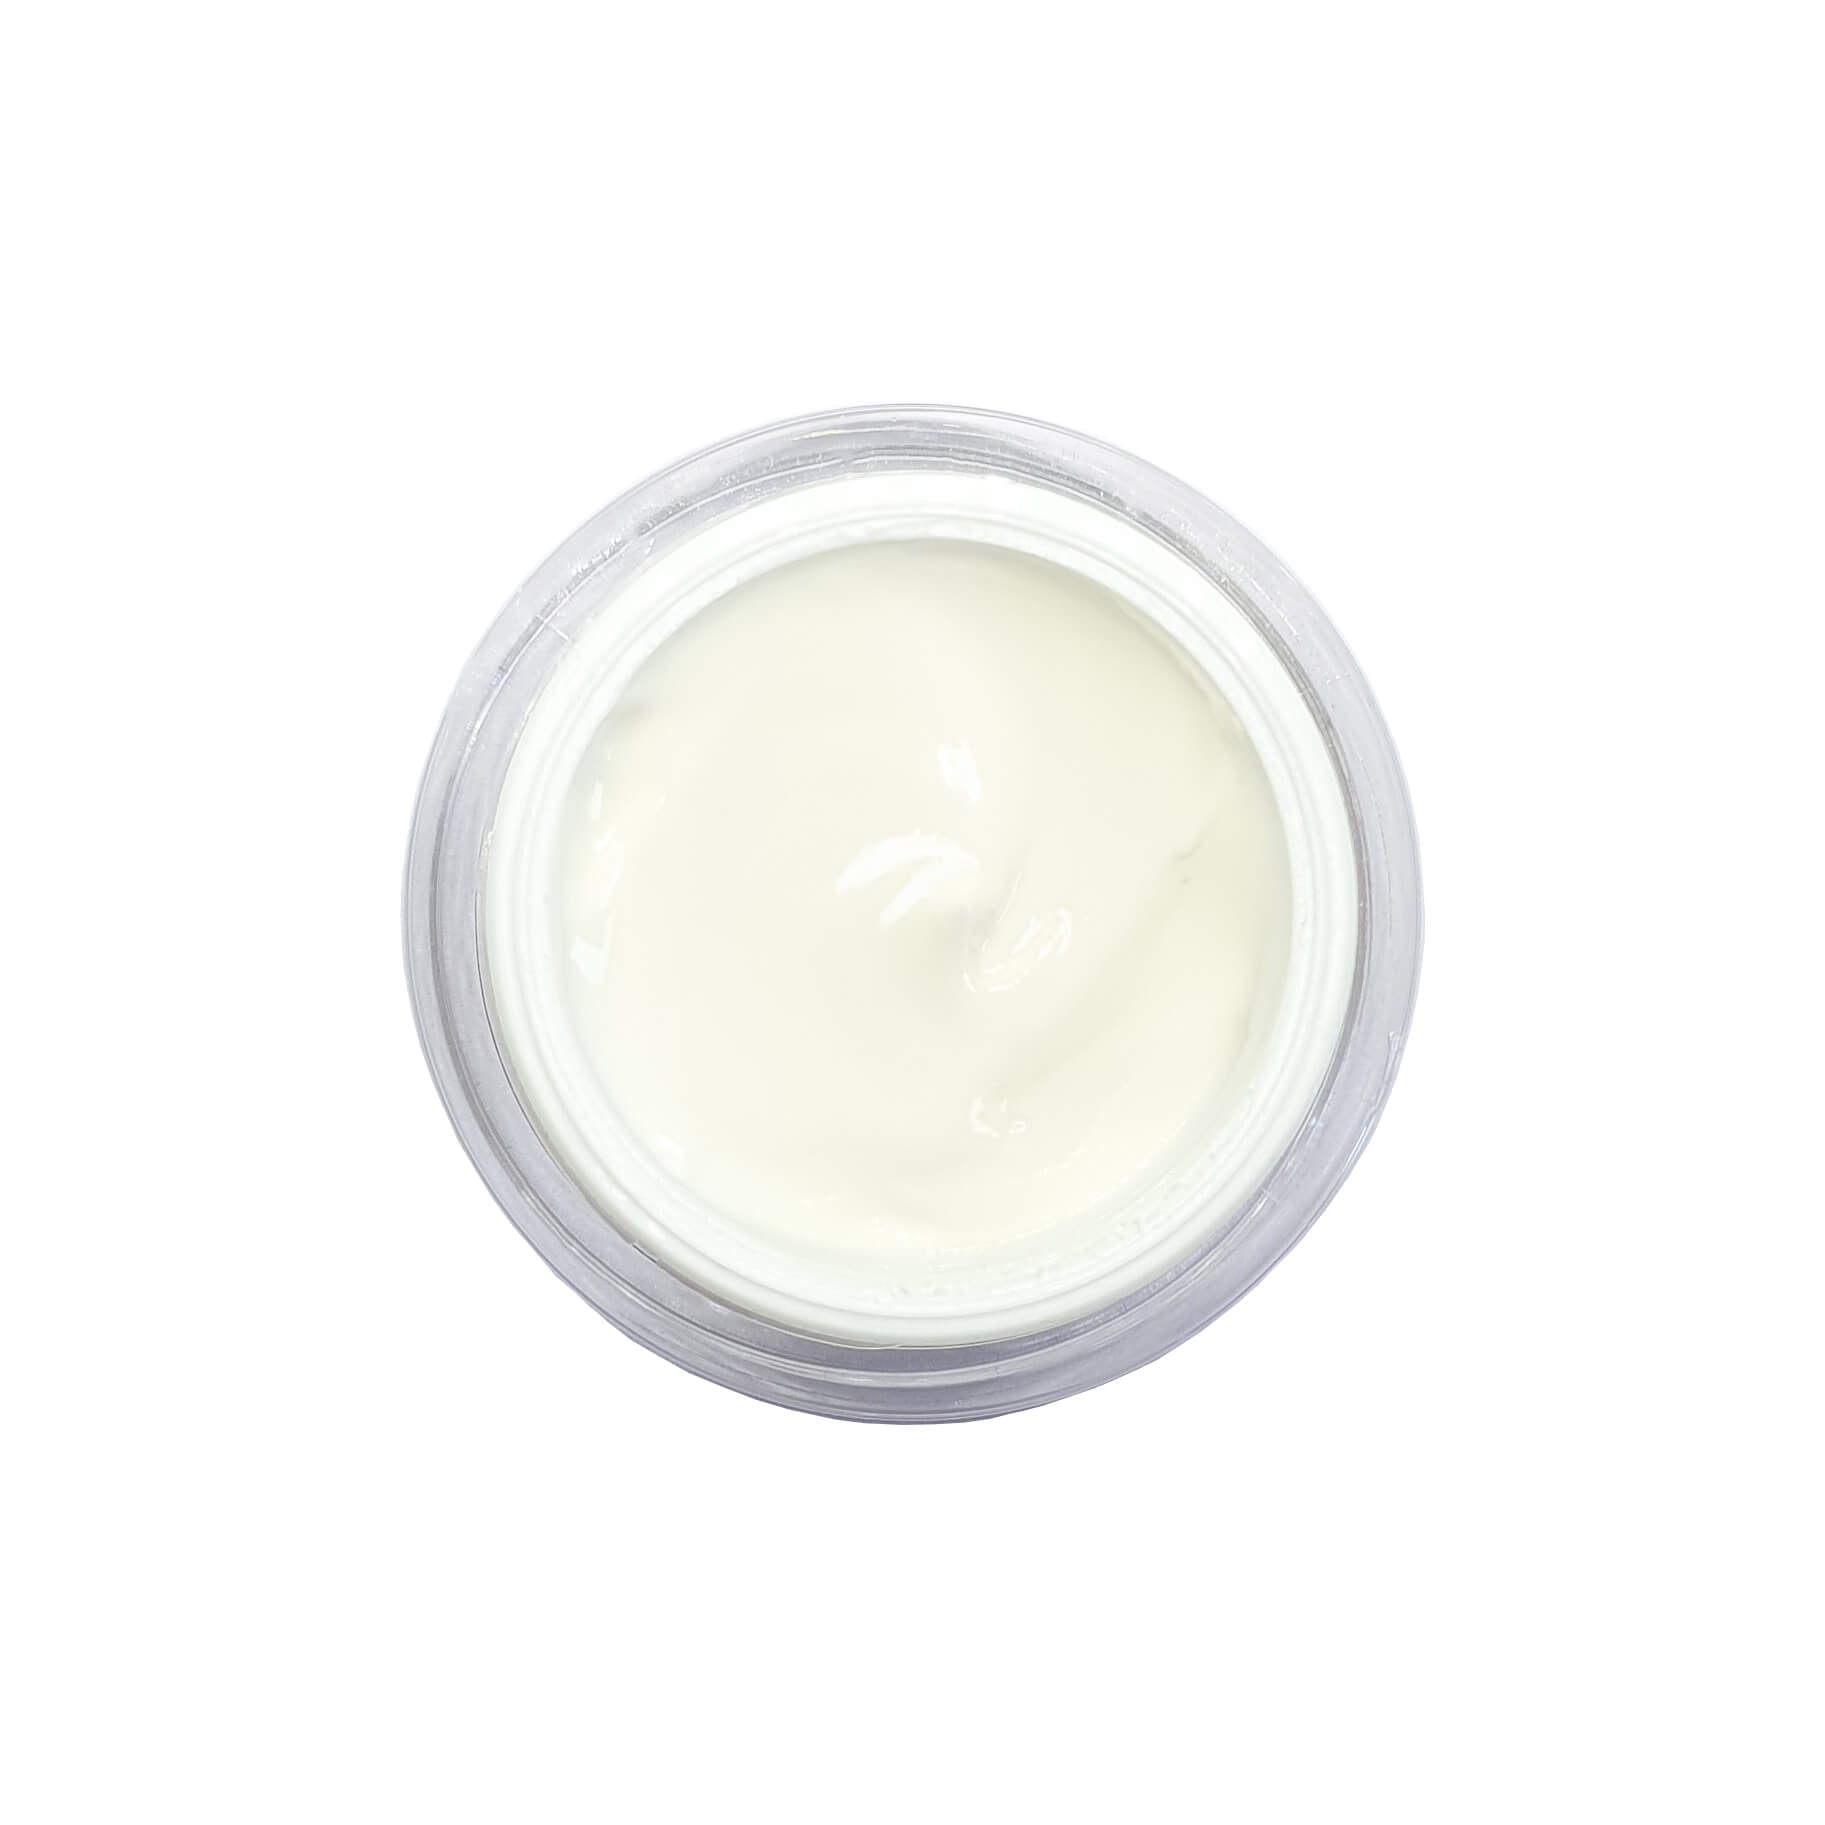 Immagine dall'alto del vaso aperto e della crema all'interno Hydra Comfort Cream 50 ml - 1.7 fl.oz.